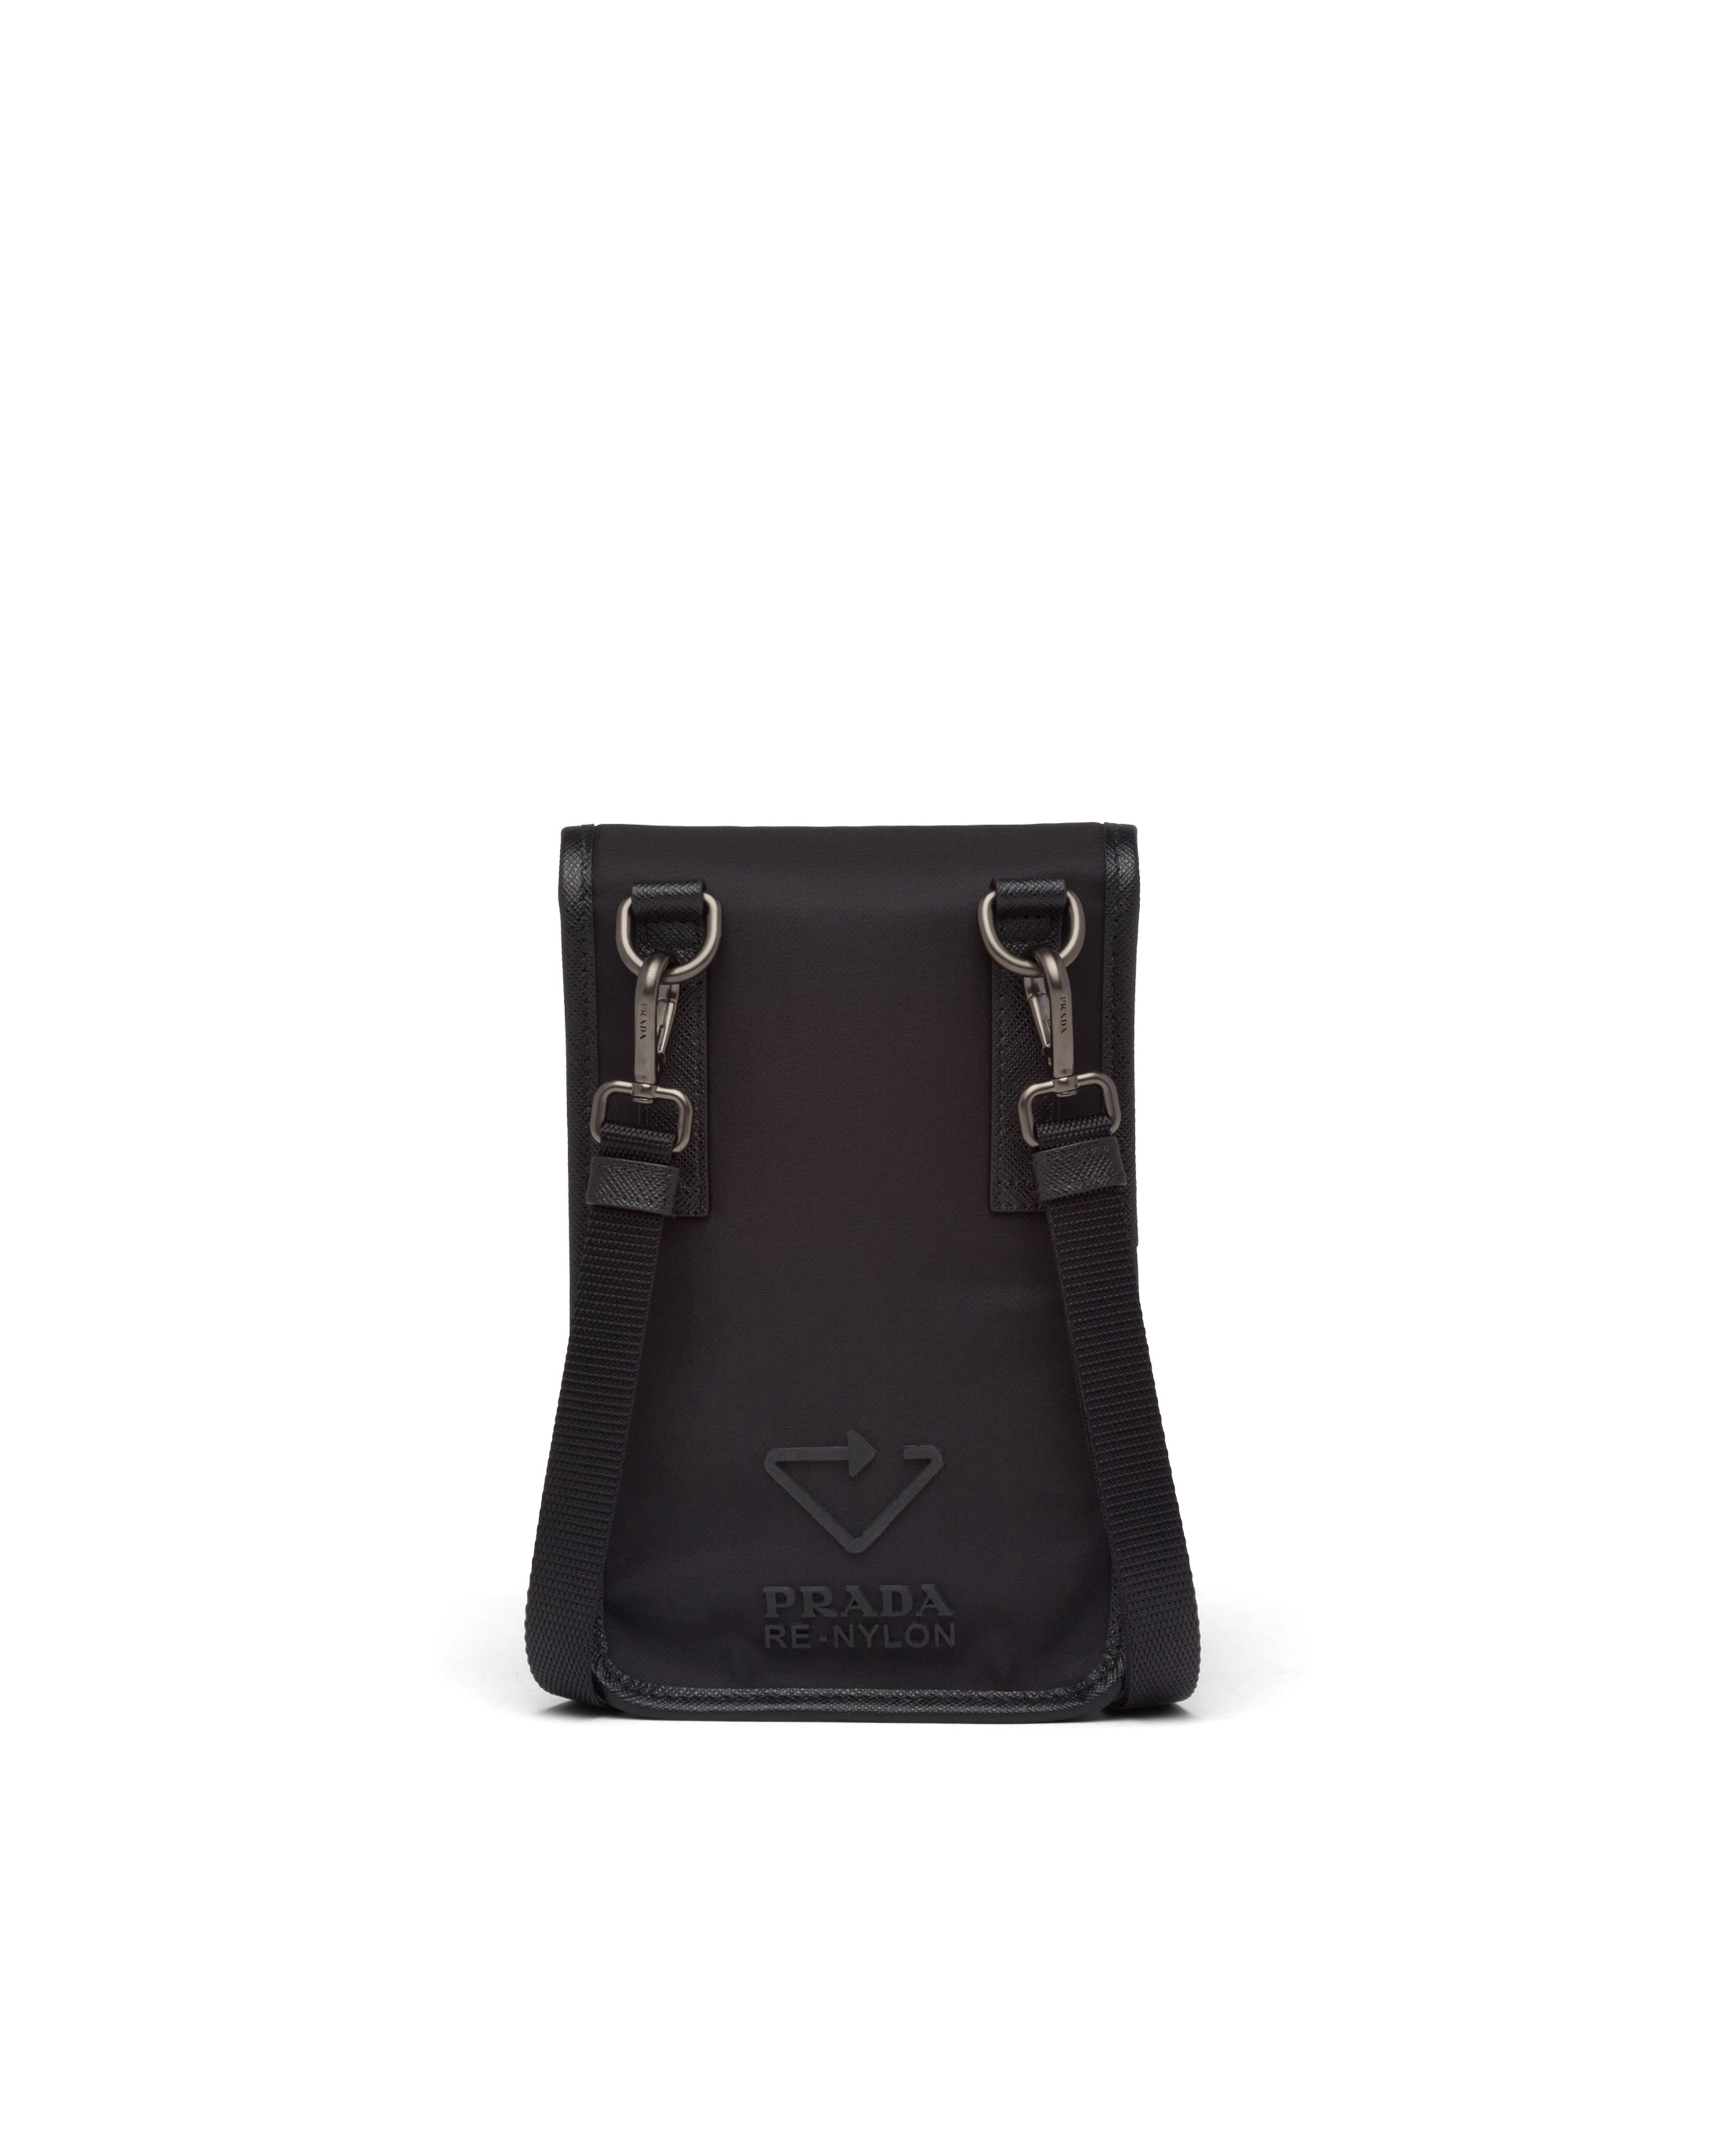 Re-Nylon and Saffiano leather smartphone case - 3